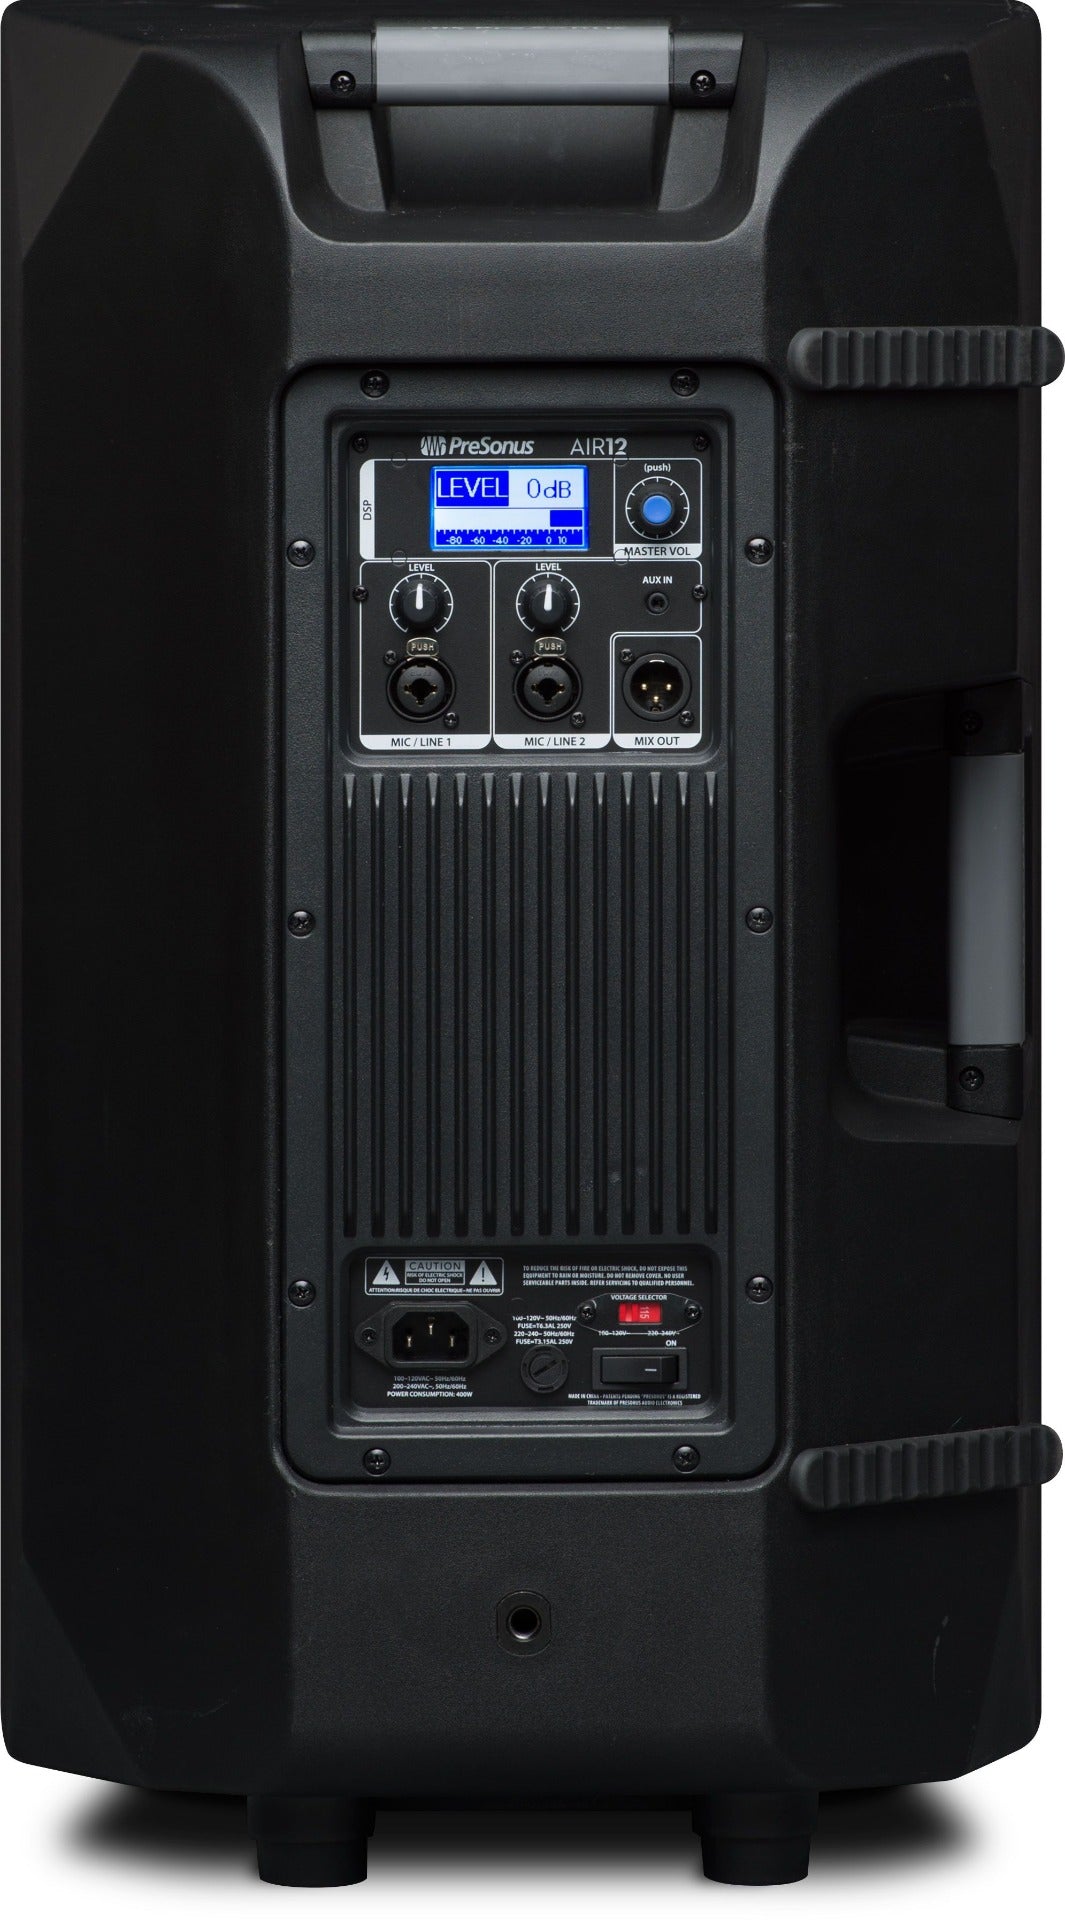 Presonus AIR-12 2-Way 12" Advanced Impulse Response Loudspeaker